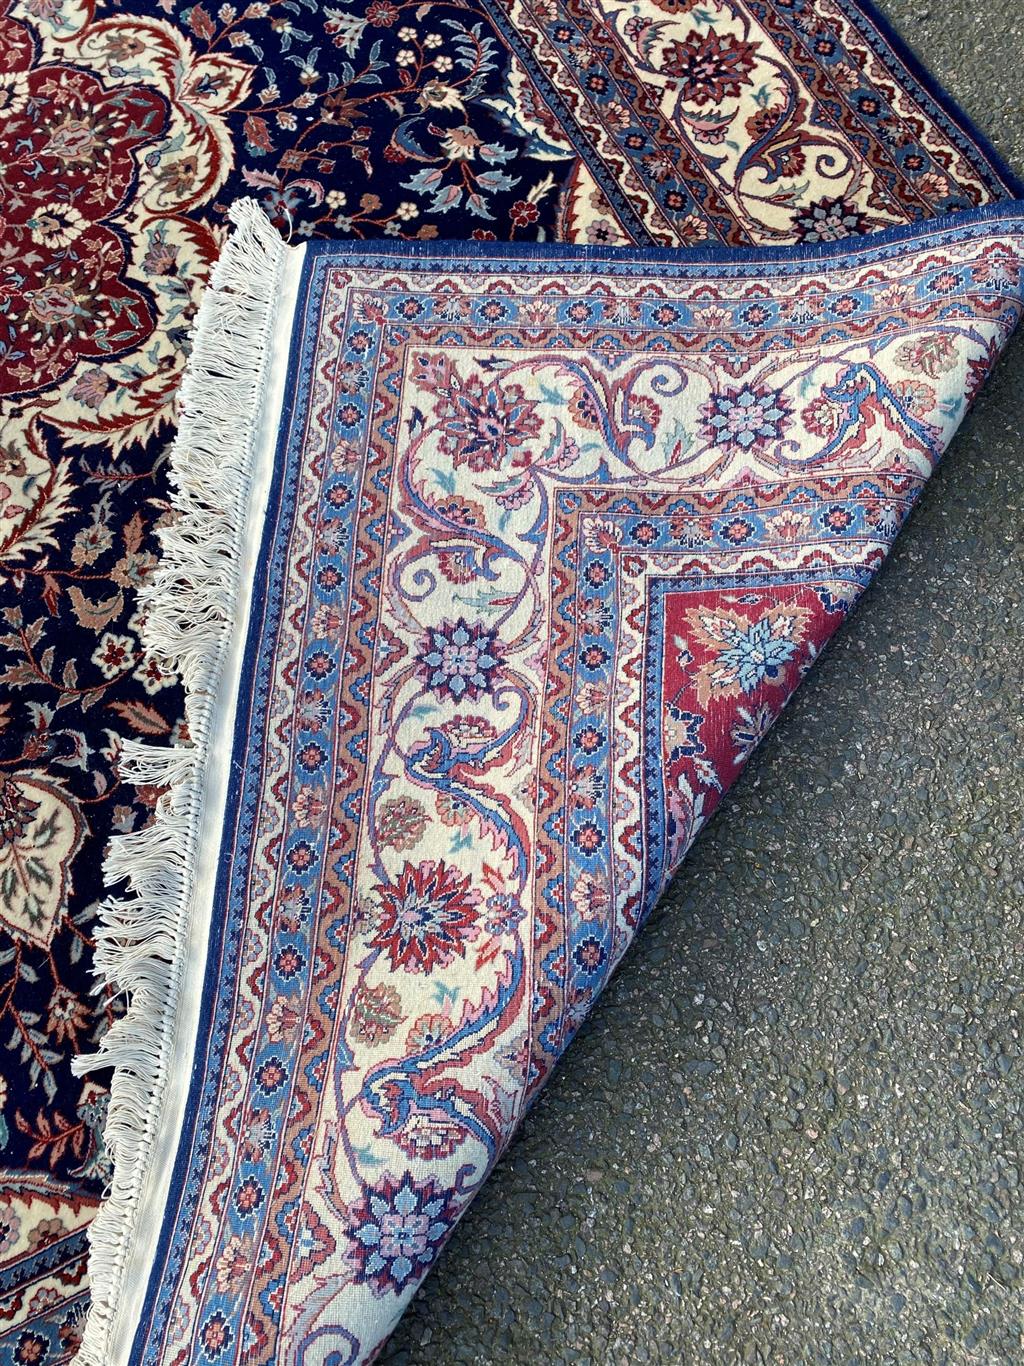 A Duruder blue ground carpet, 306 x 242cm